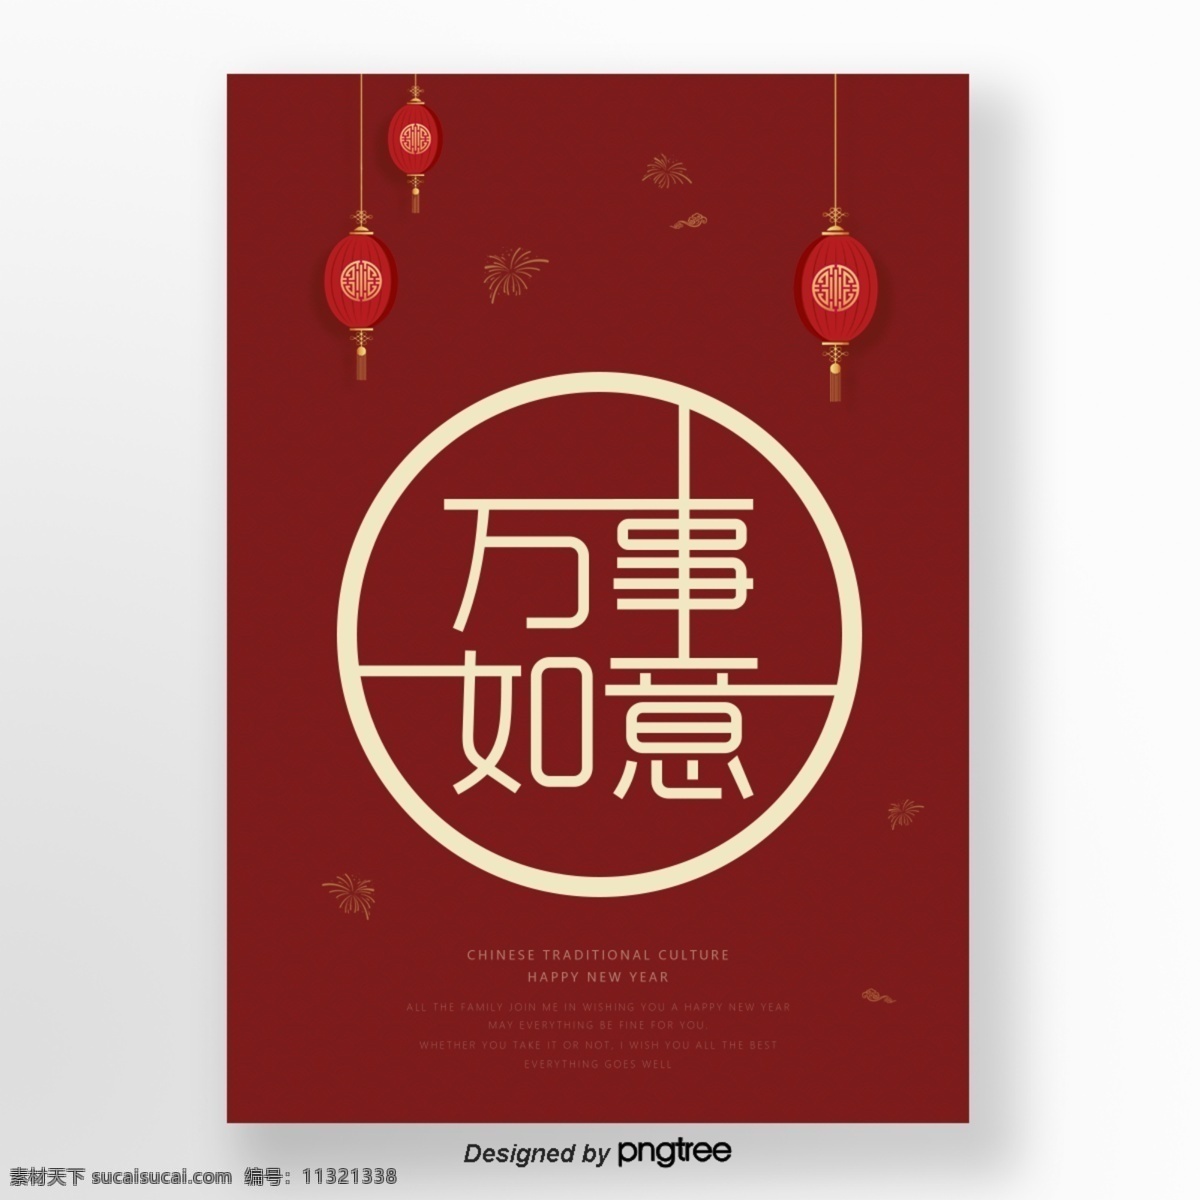 创意 2019 新年 文字 海报 字体 春节 灯笼 新年快乐 万事如意 庆祝 传统 红色 喜庆 新春